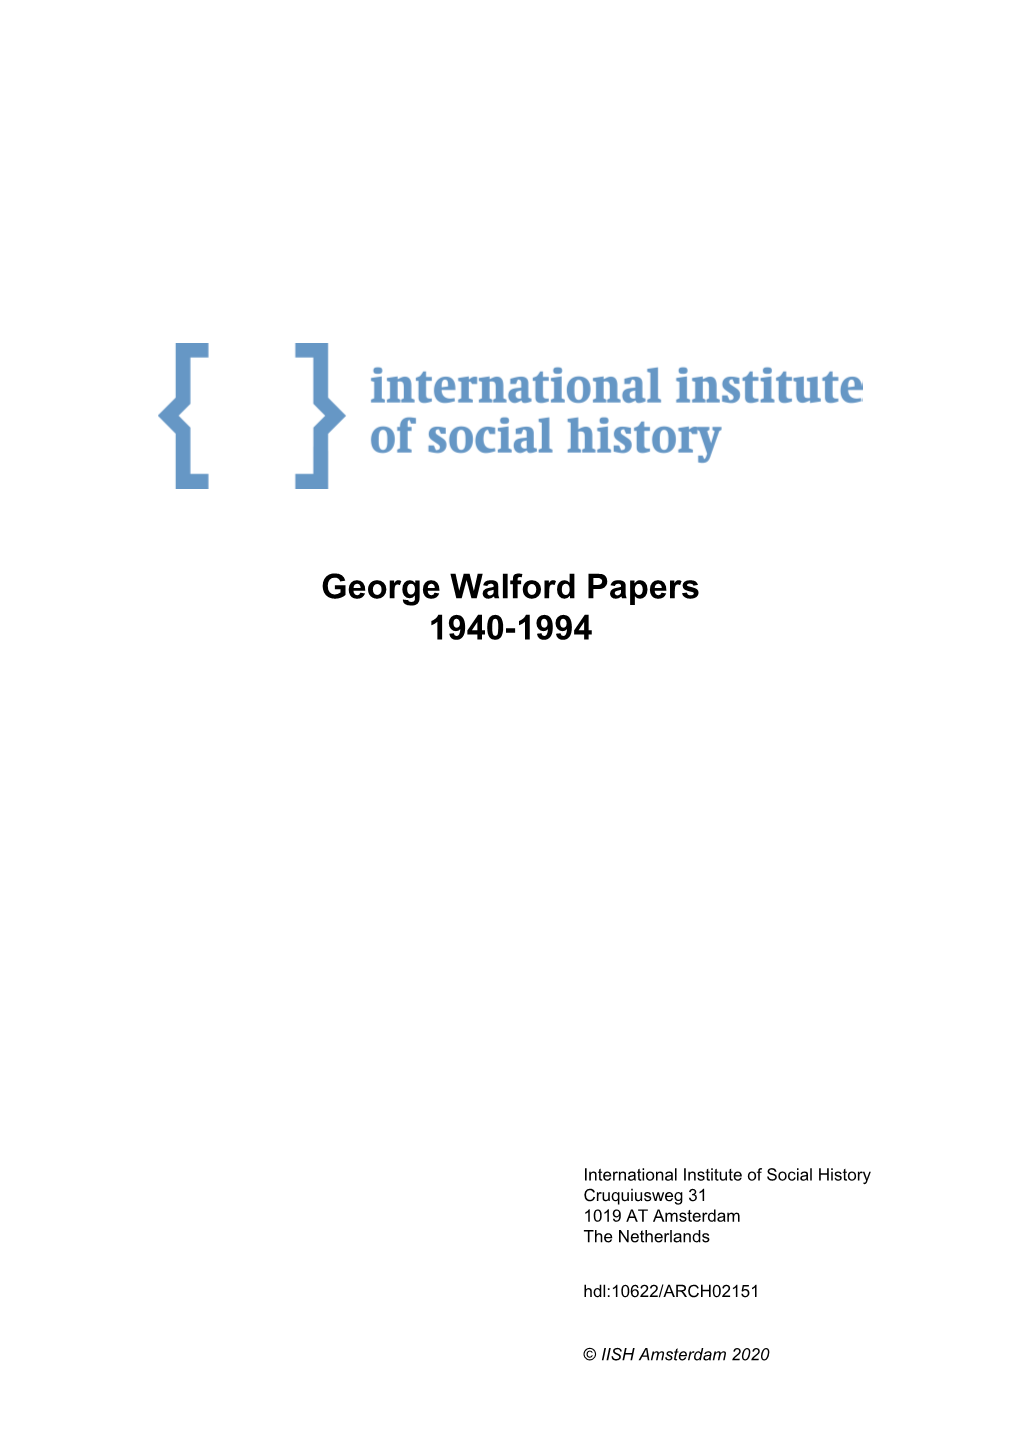 George Walford Papers 1940-1994